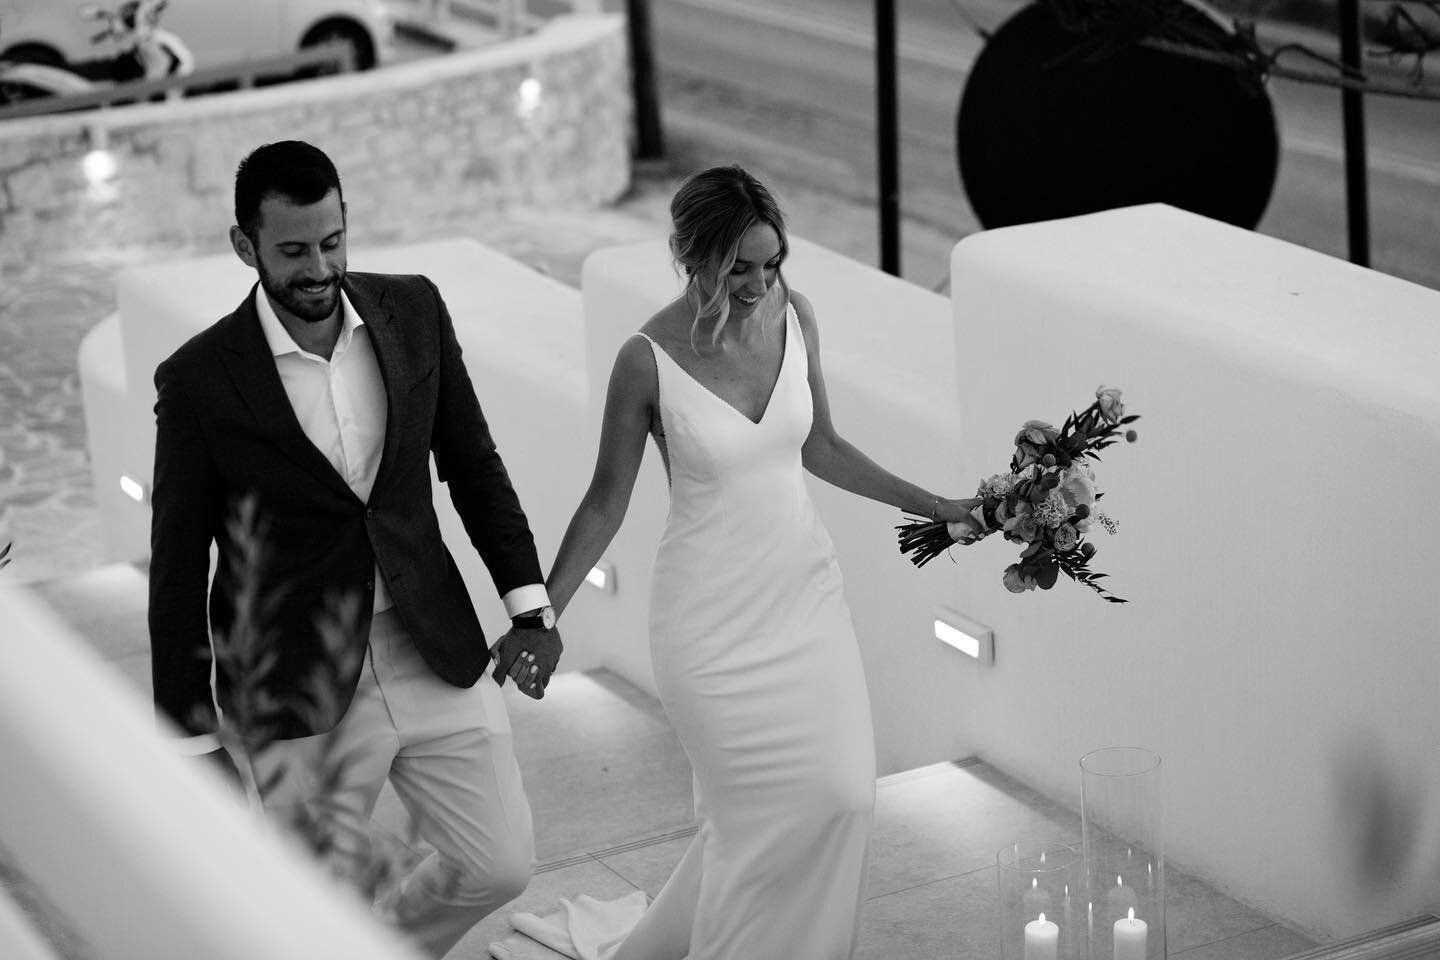 Freda &amp; Nikitas, Paros ⛪️

Wedding planning: @mitheoevents 
&bull;
&bull;
#happycouple #paroswedding #cycladic #summerwedding #brideandgroomportrait #youmaykissthebride #instaweddings #justmarried #happybride #ellwedmag #happygroom #greecedestina